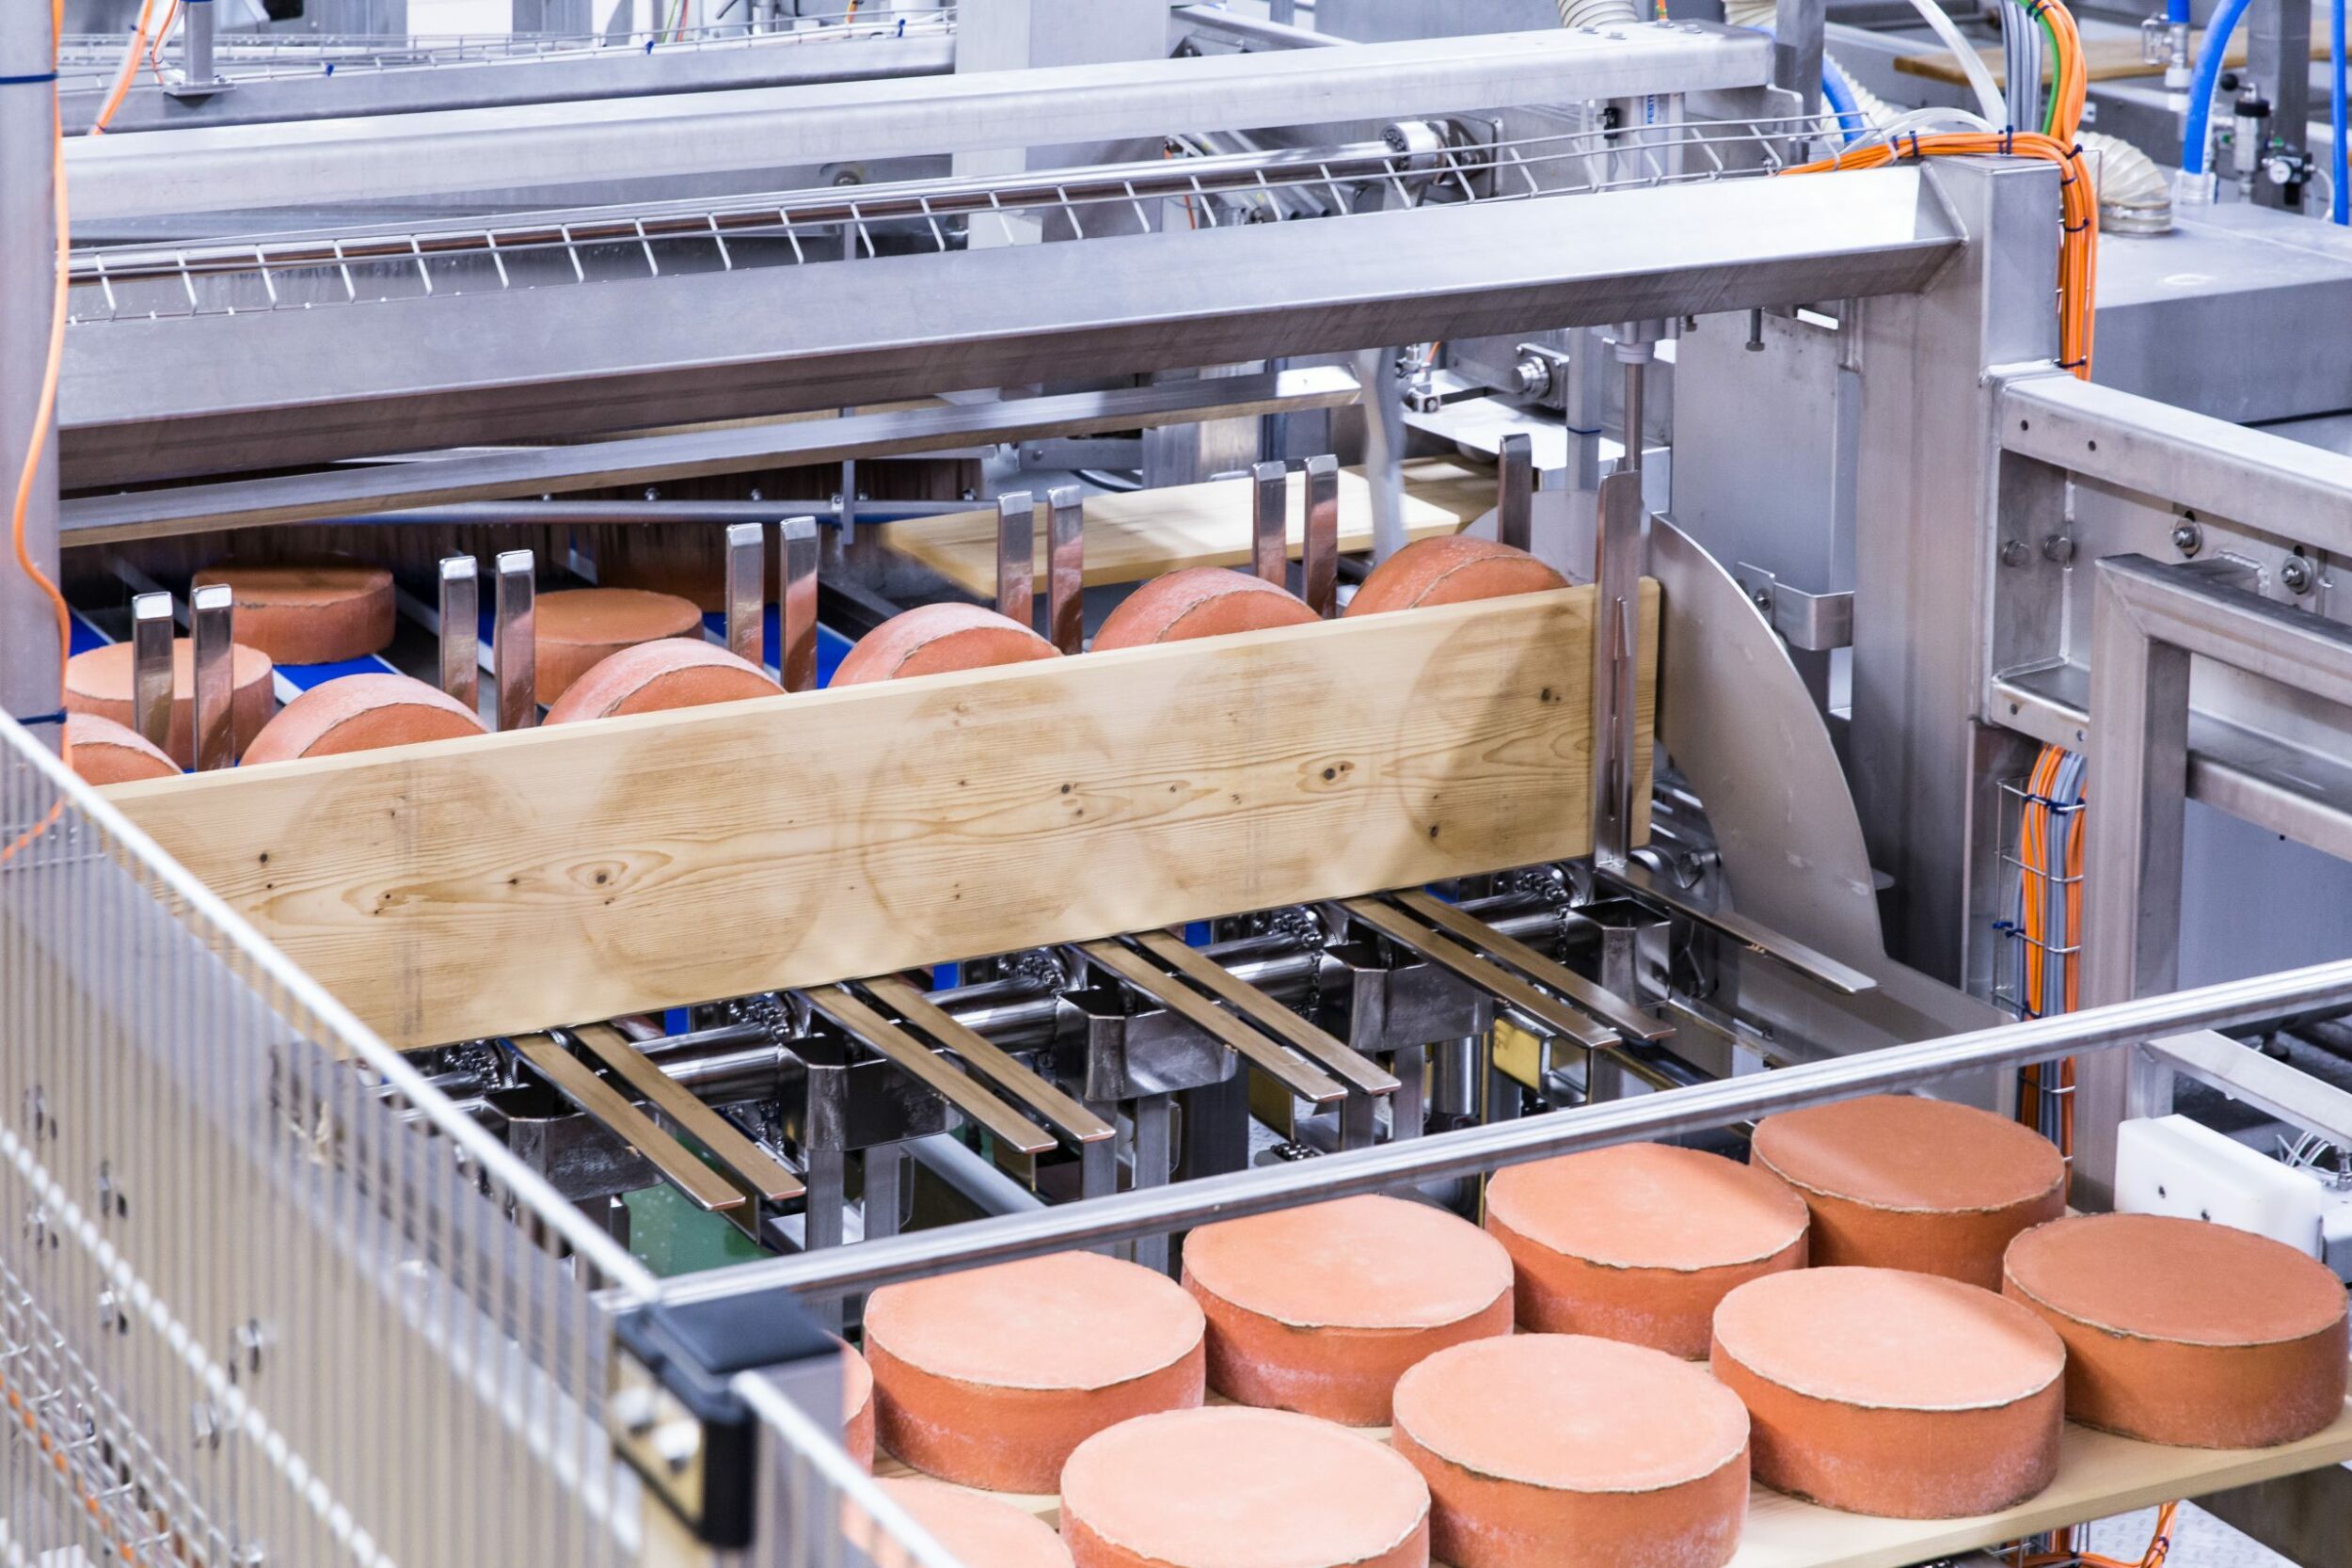 Die Käsepflegeanlage automatisiert komplexe Aufgaben in einer österreichischen Großkäserei. (Bild: SwissDrives AG)